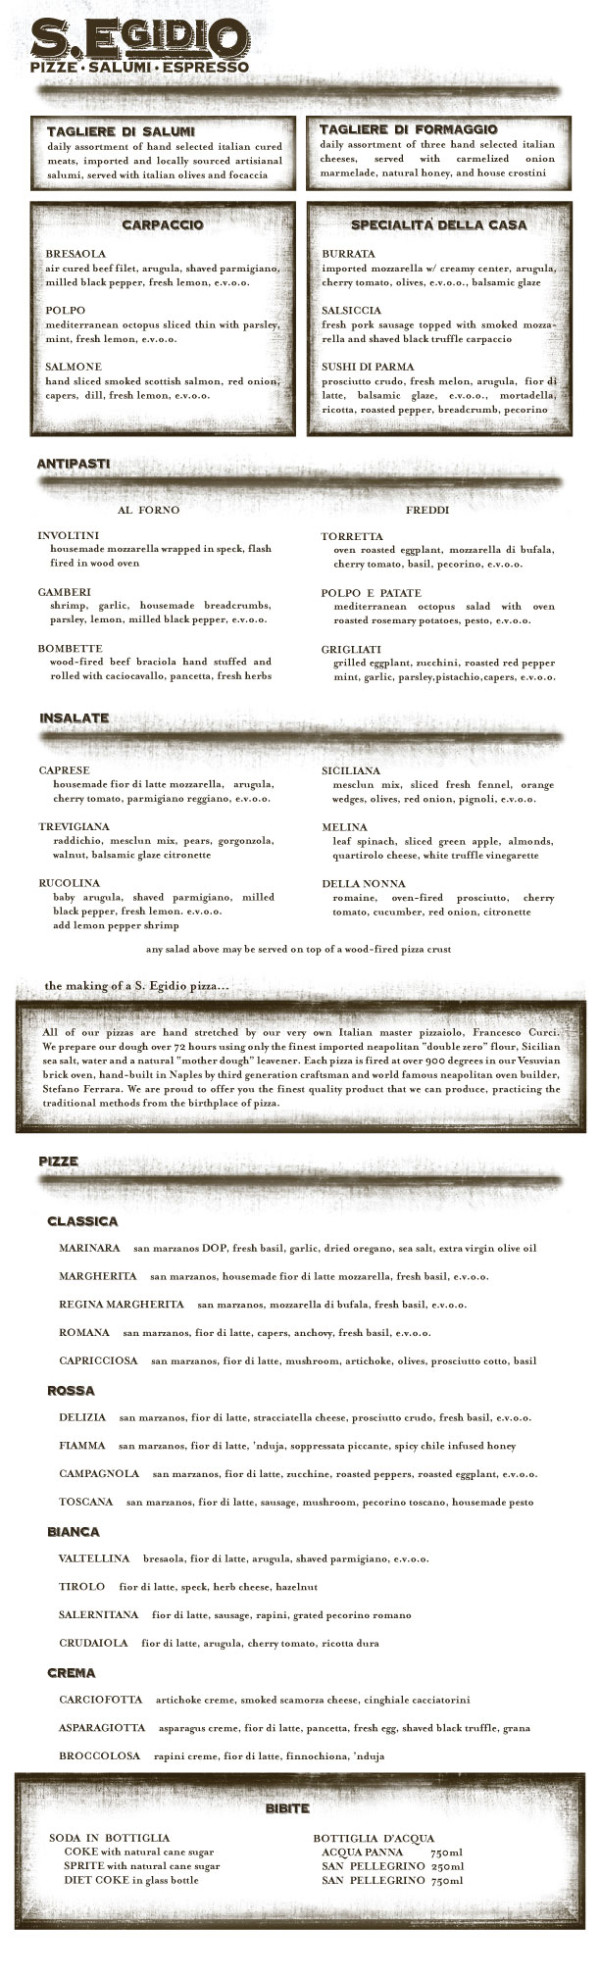 segidio_menu